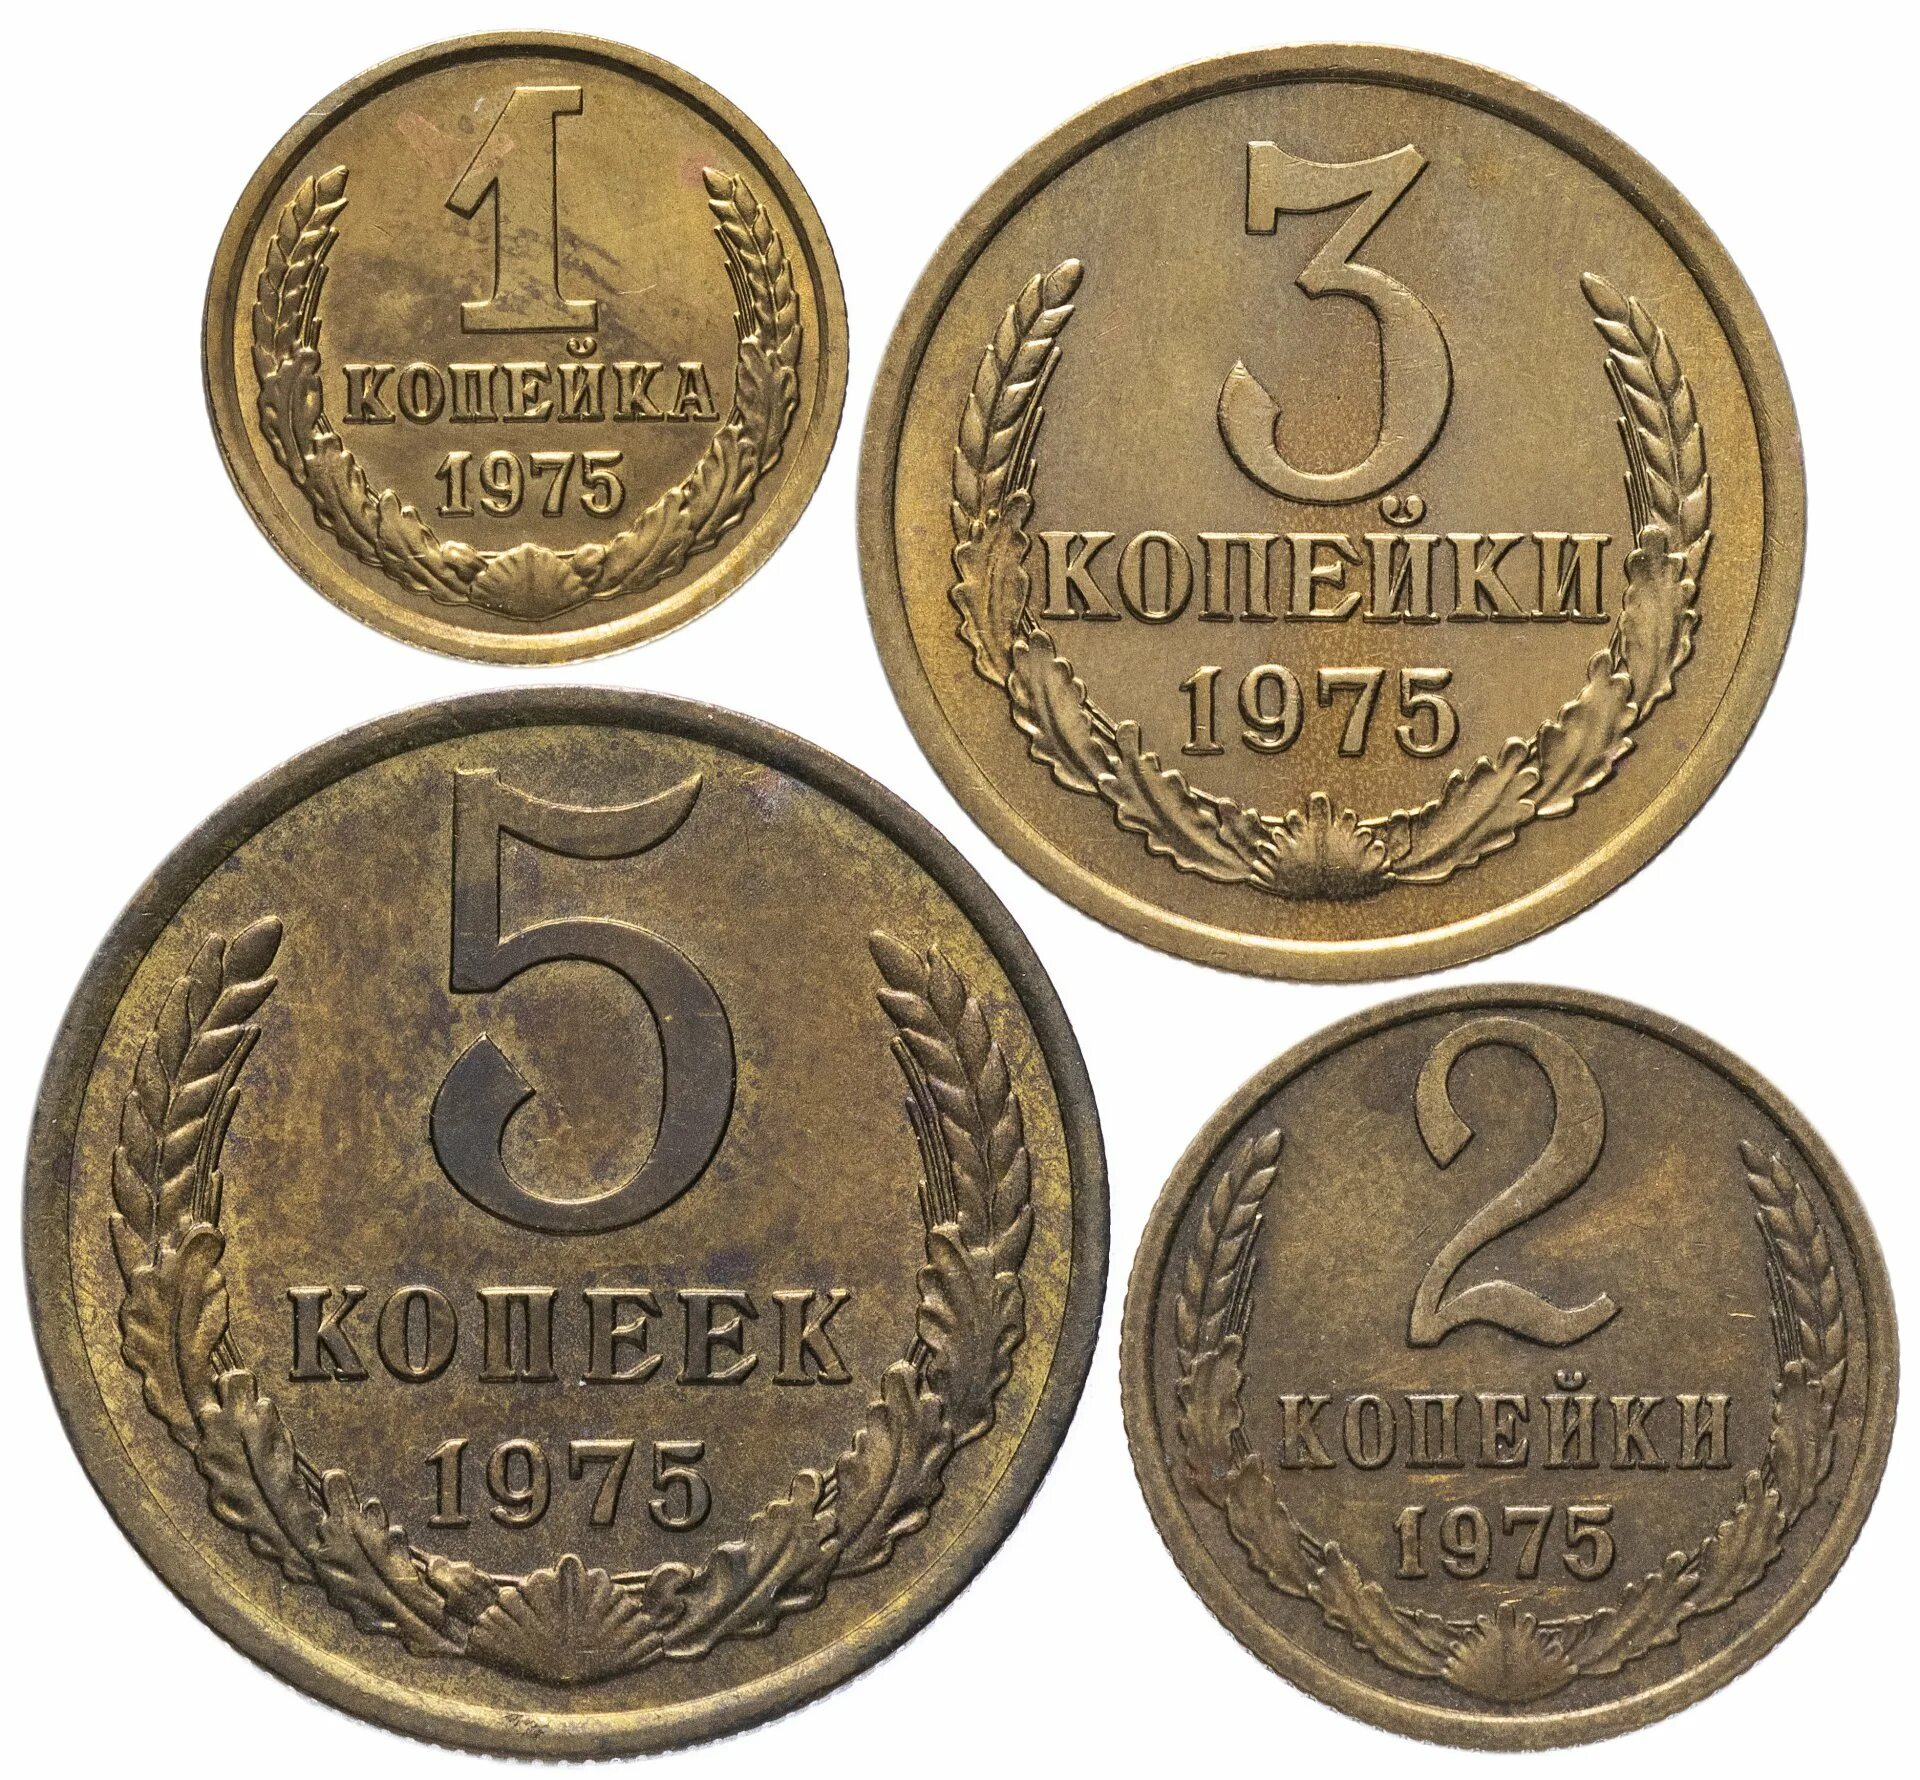 3 01 в рублях. Монеты. Деньги старинные монеты. Старые советские монеты. Советские монеты копейки.